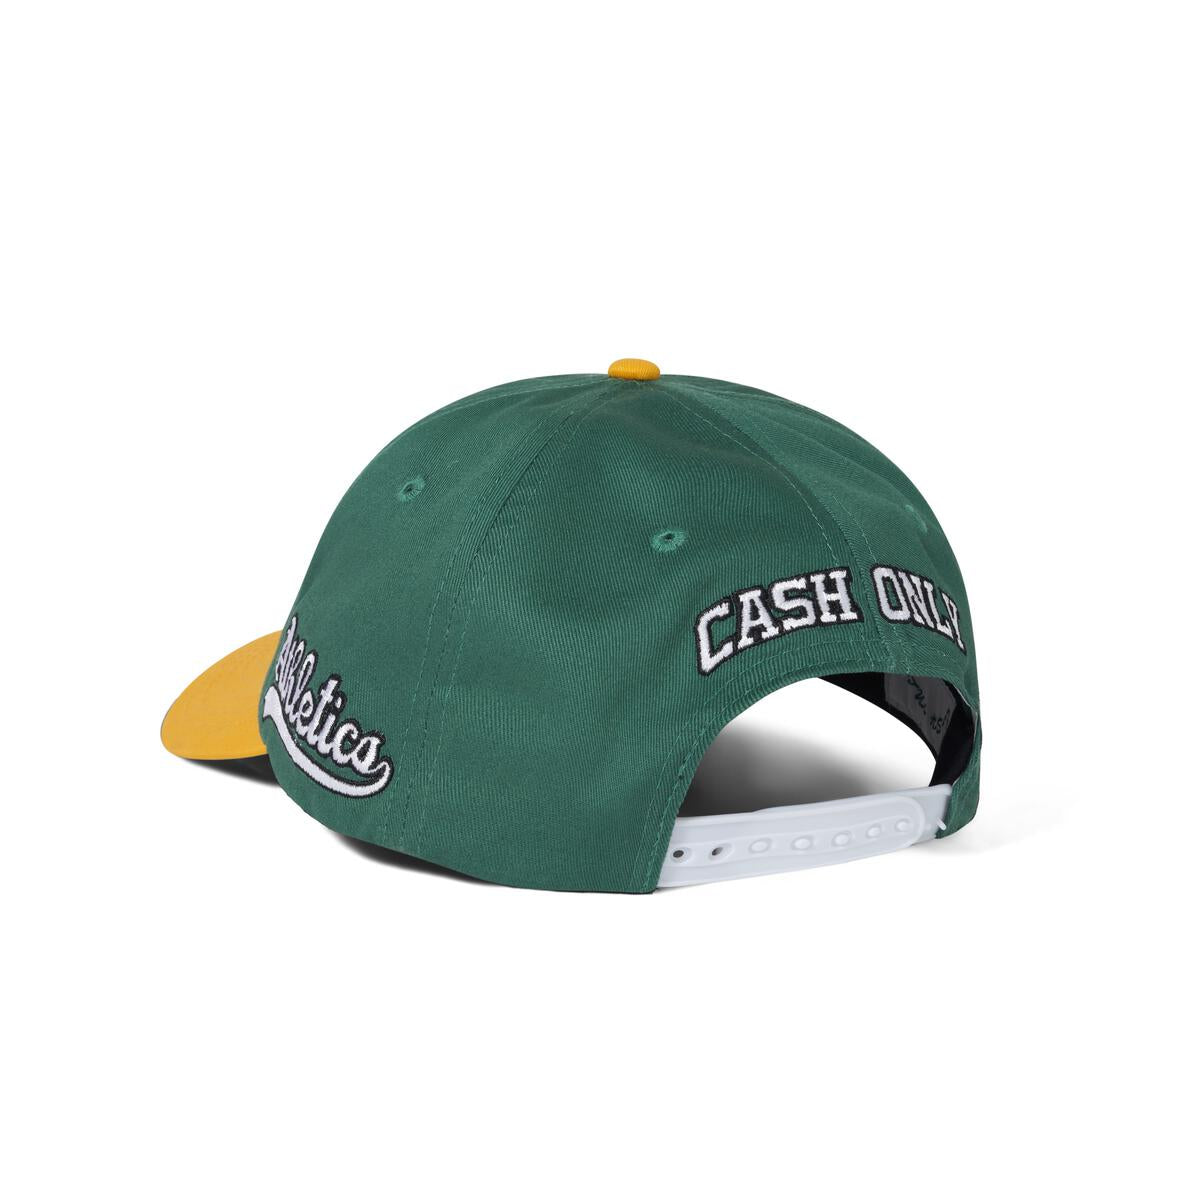 CASH ONLY DIST BALLPARK SNAPBACK CAP GREEN / GOLD